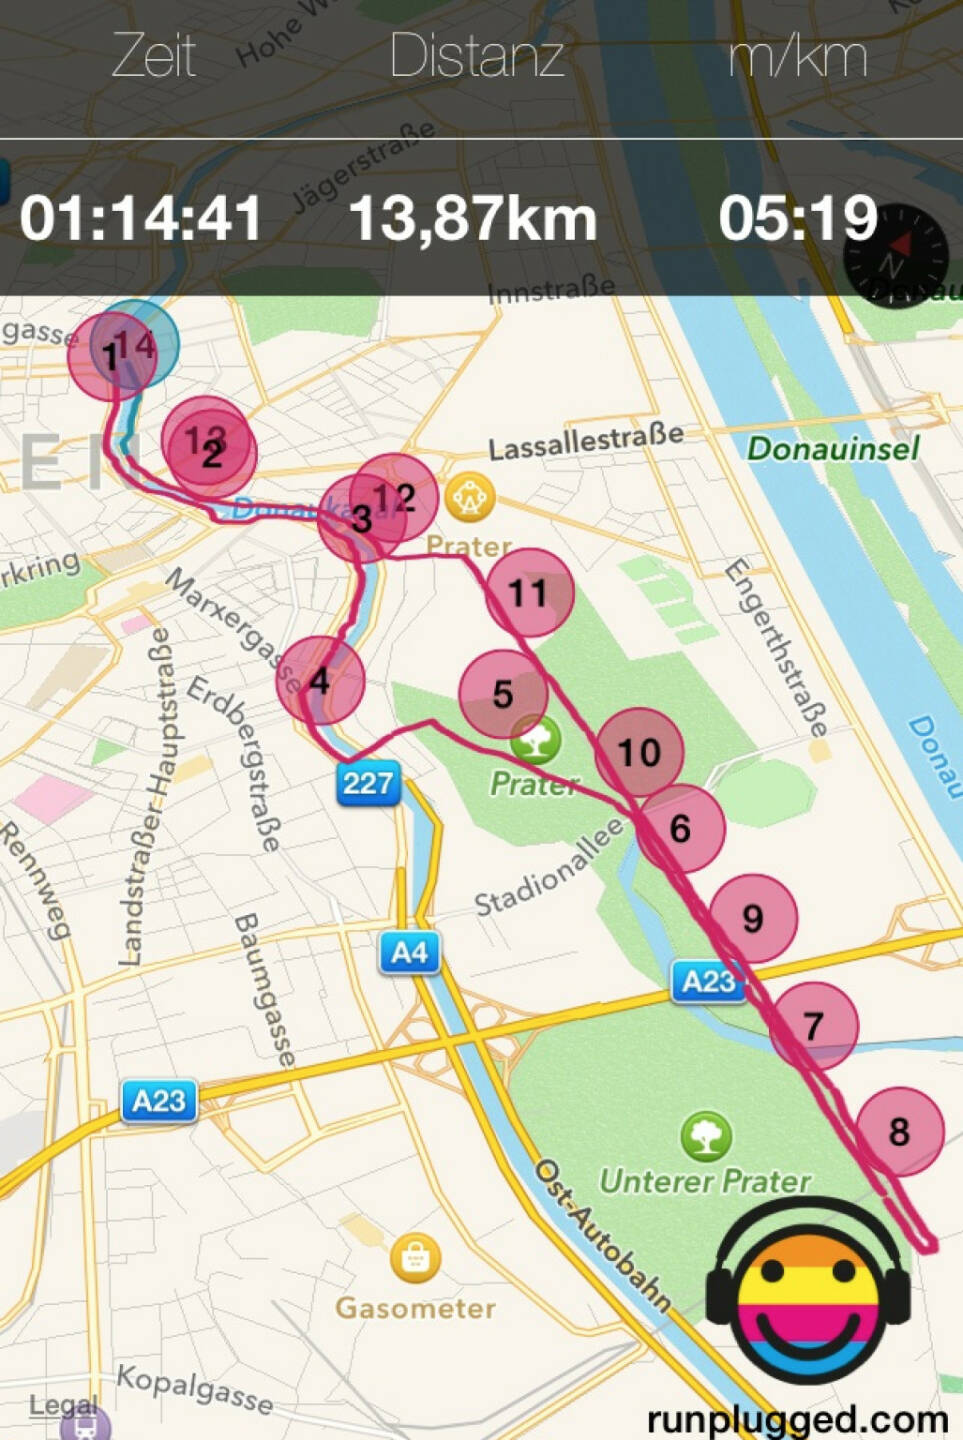 Runplugged Map: Ringturm - Lusthaus und zurück im Plaudertempo